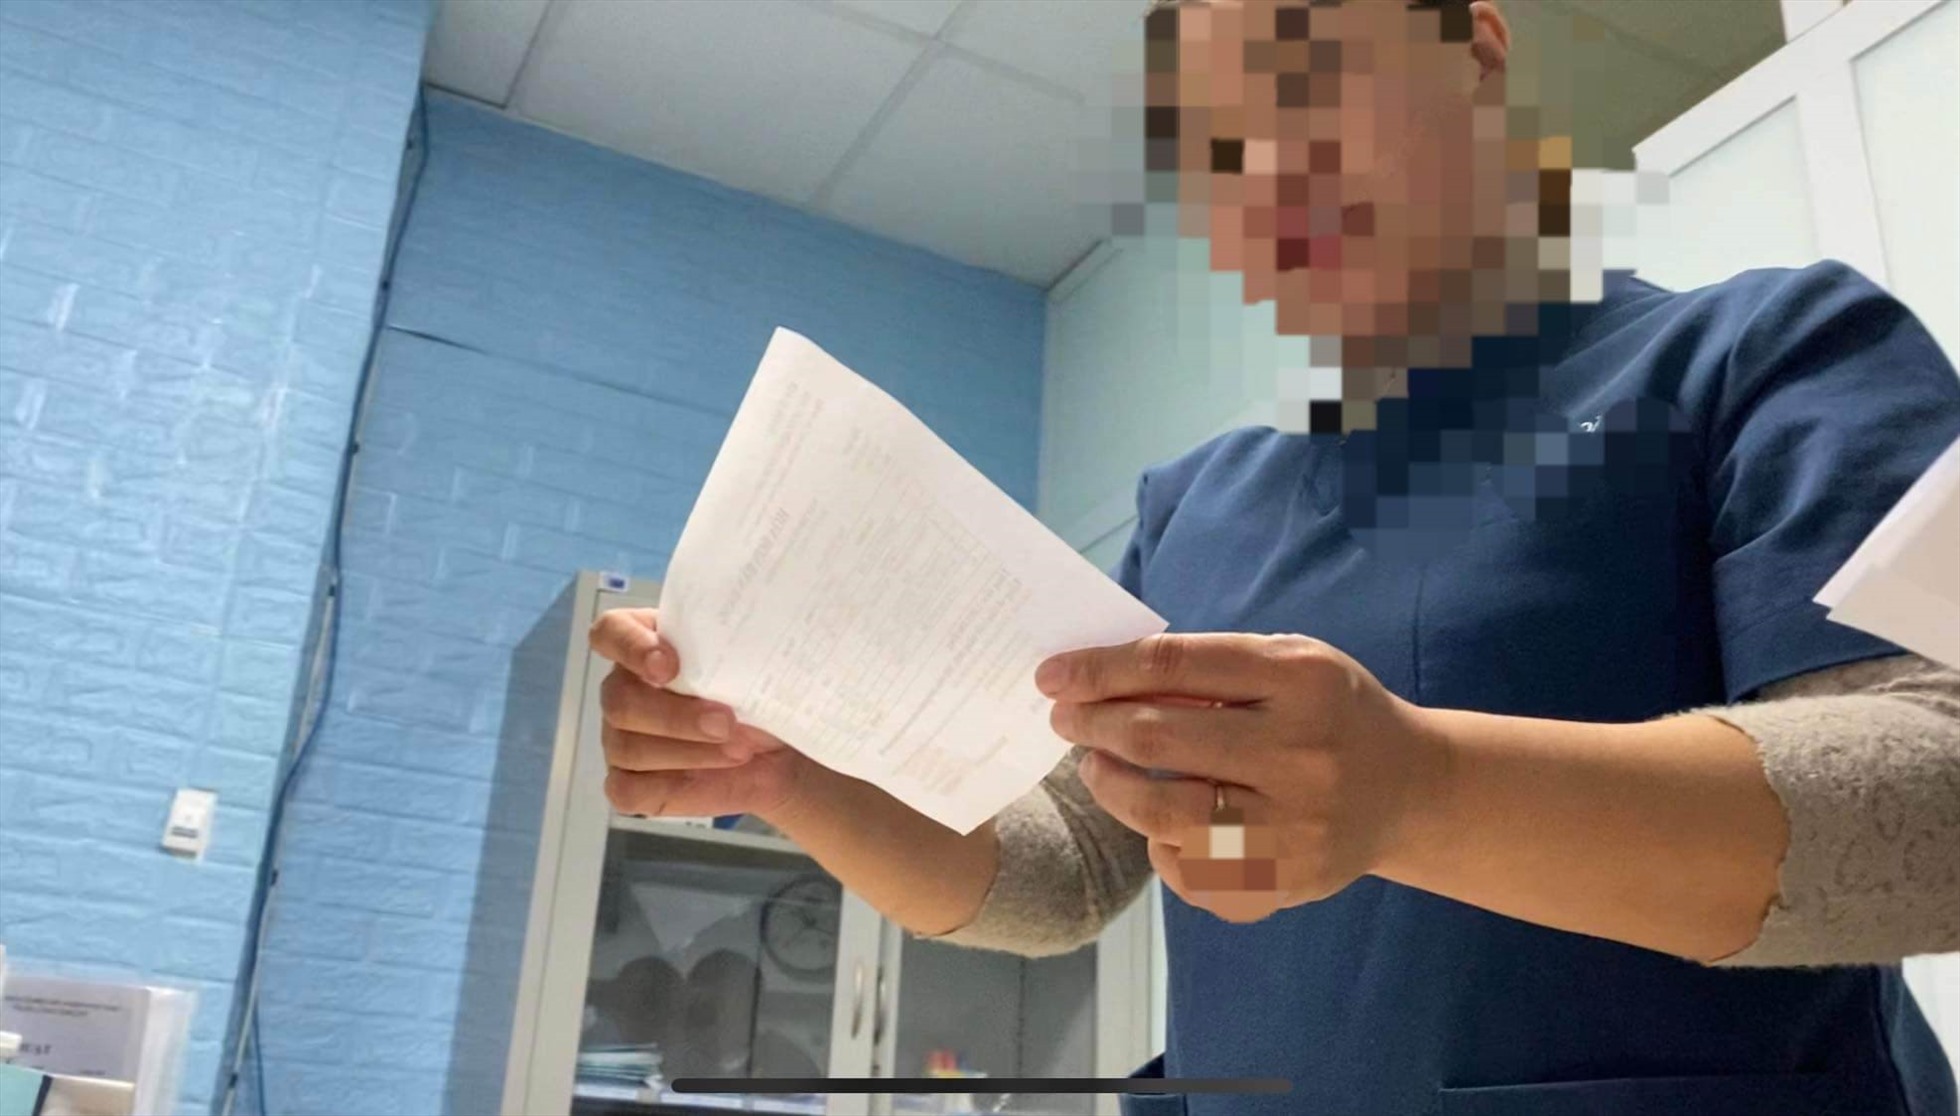 Các điều dưỡng/hộ sinh ở Khoa Phụ sản- BVĐK Hà Đông đã kê đơn thuốc cho bệnh nhân, làm thay việc của bác sĩ. Ảnh: Phóng viên Lao Động